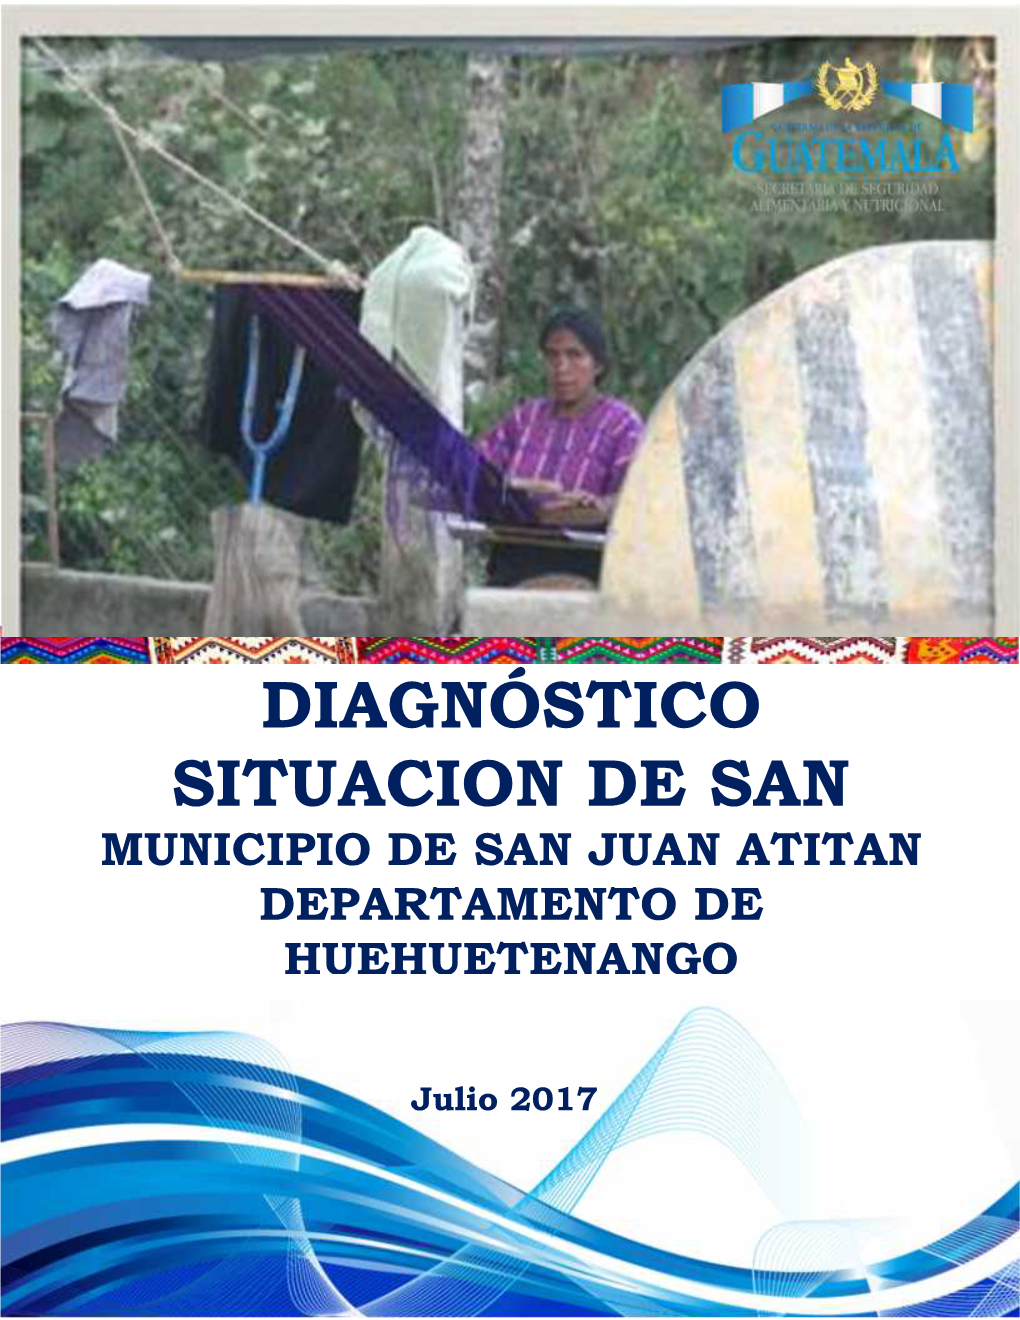 Diagnóstico Situacion De San Municipio De San Juan Atitan Departamento De Huehuetenango